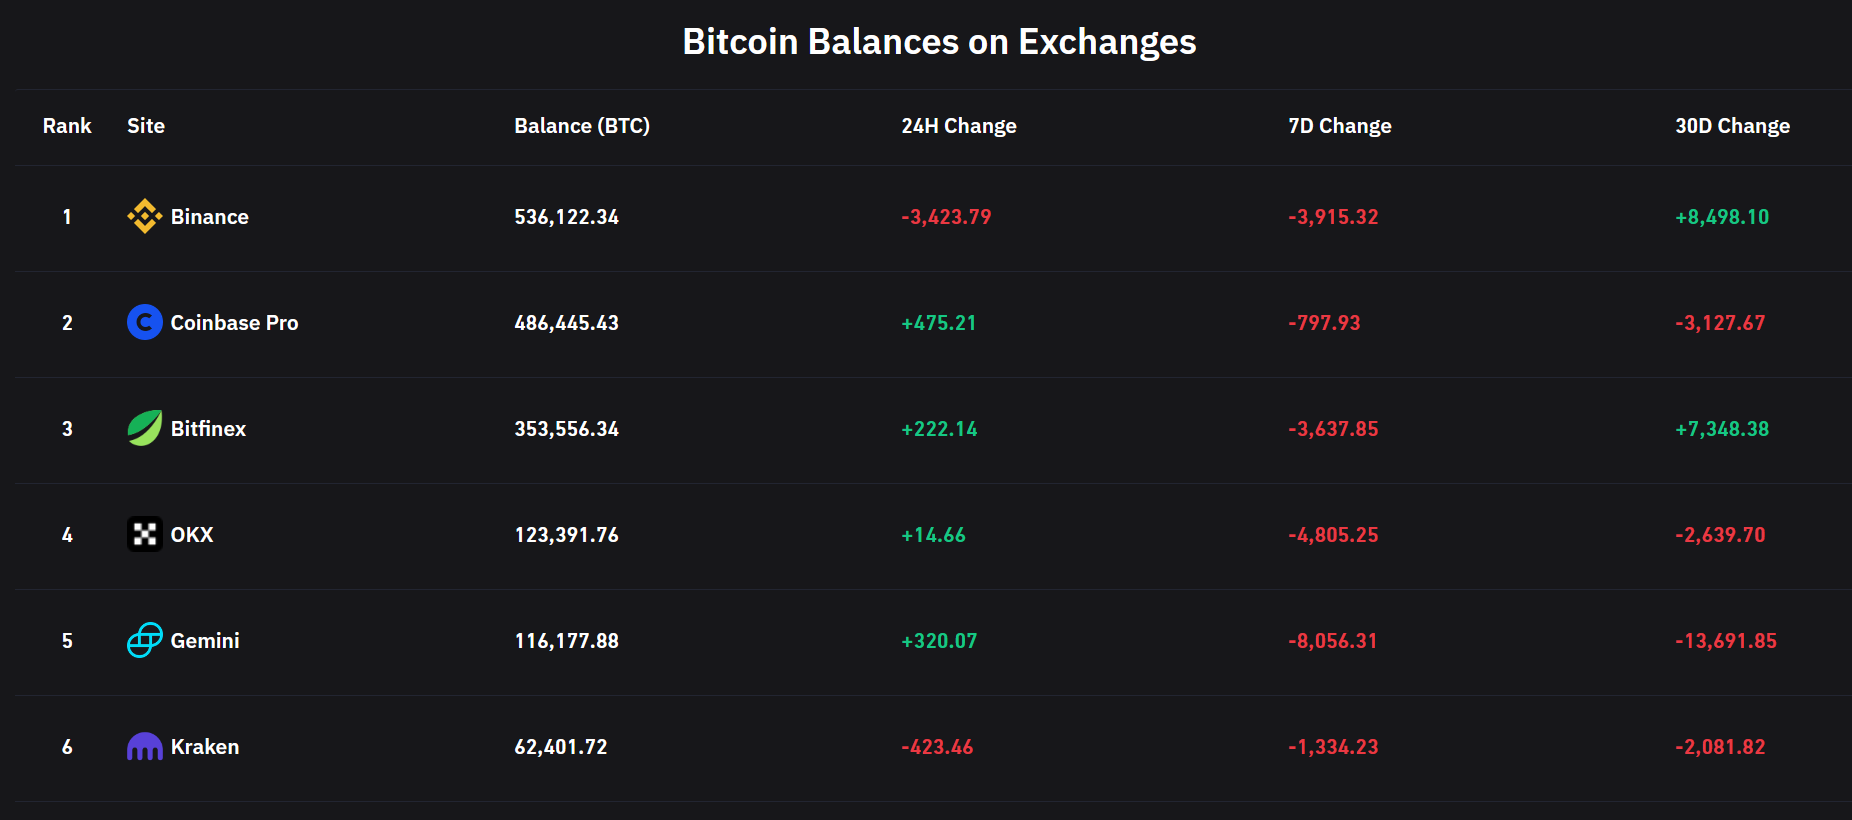 Баланс Binance Bitcoin упал на 3,4 тыс. BTC в течение 24 часов после иска CFTC